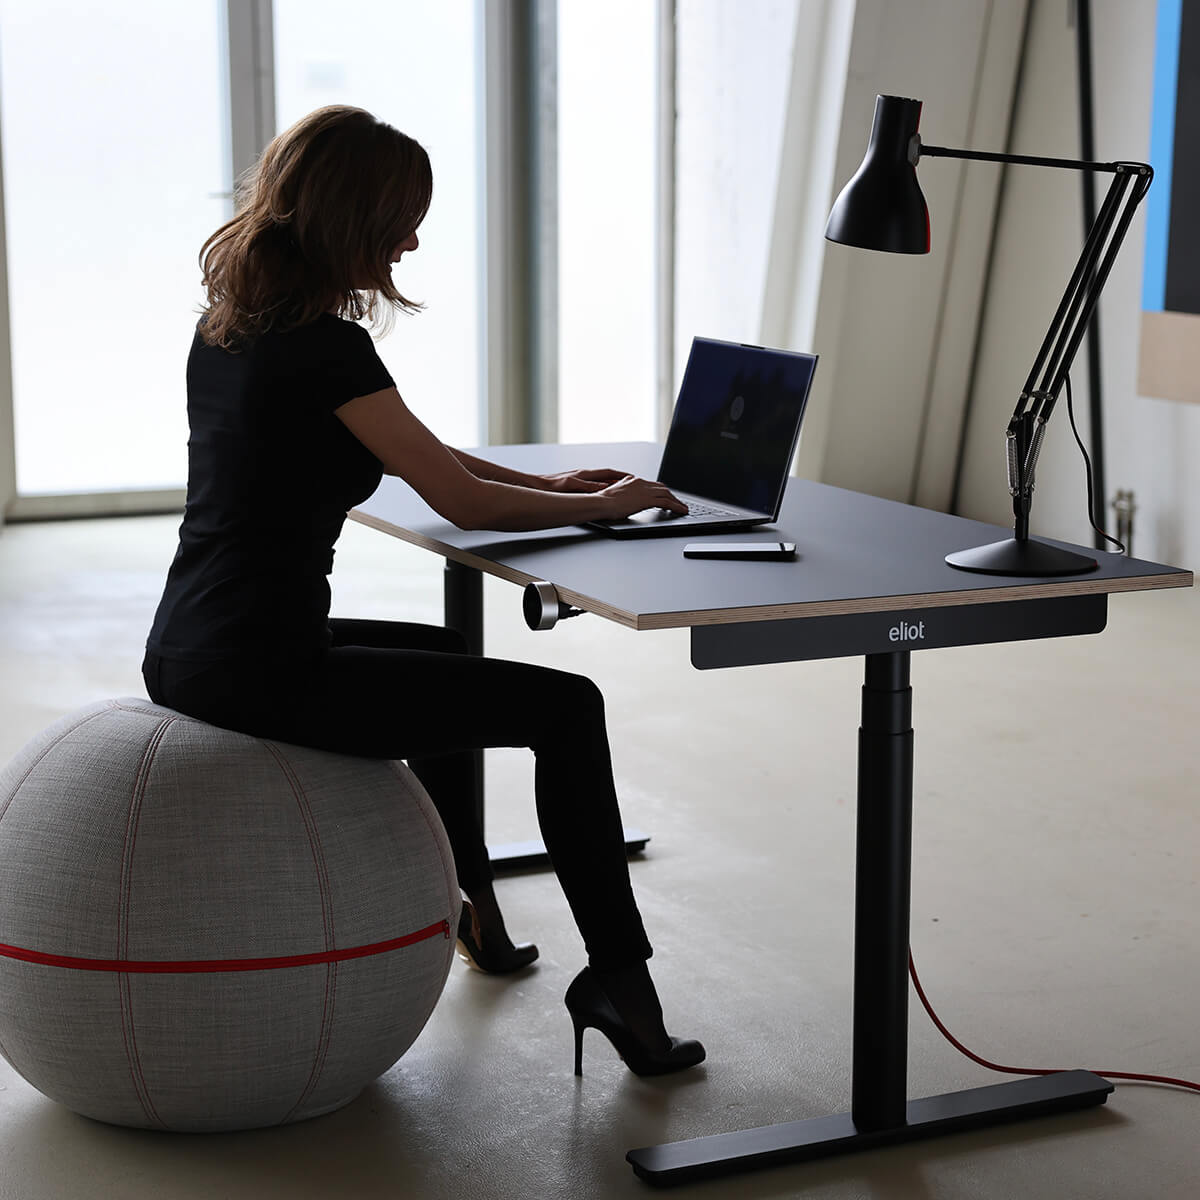 Ein Frau sitzt auf einem großen Stoffball und arbeitet am Laptop, der an auf einem schwarzen Eliot-Tisch liegt